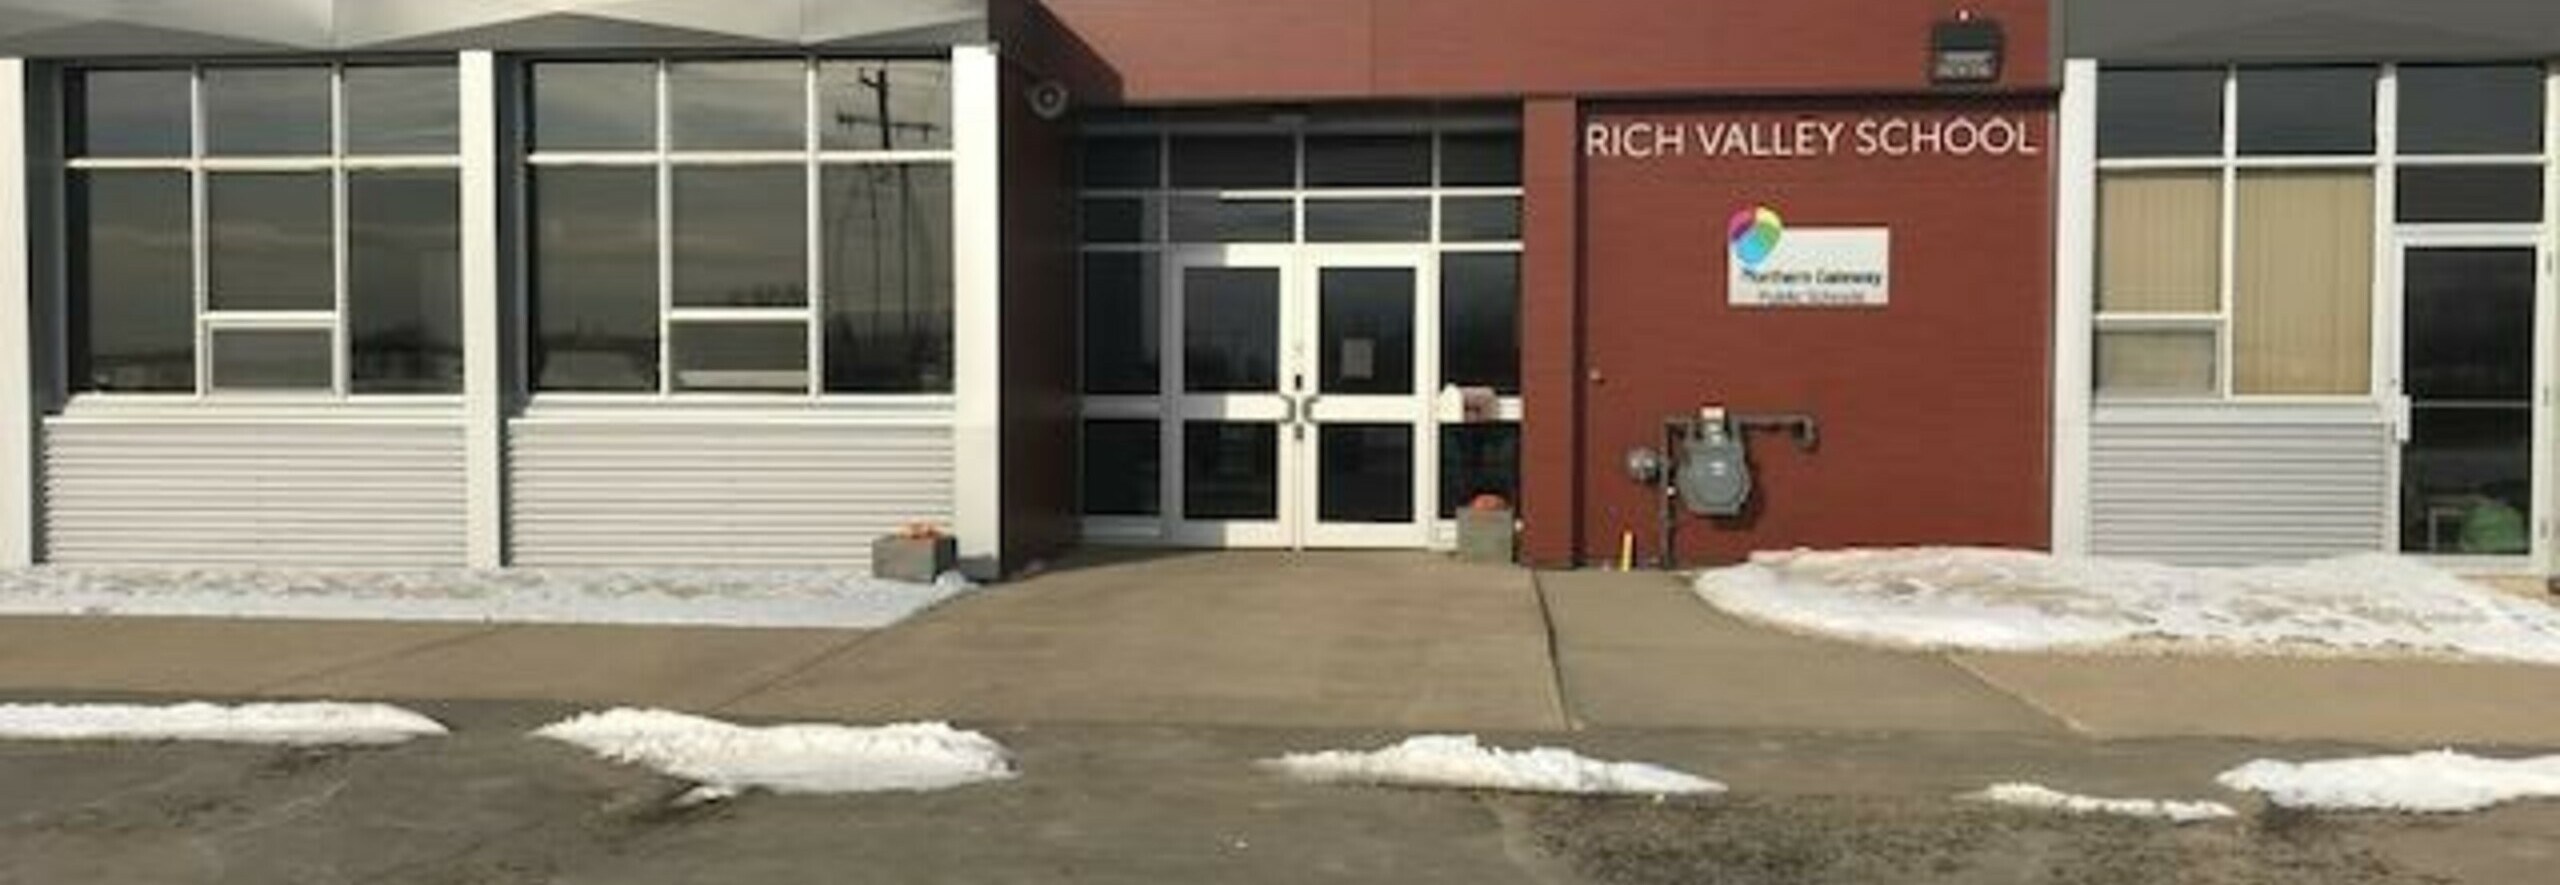 Rich Valley School Banner Photo